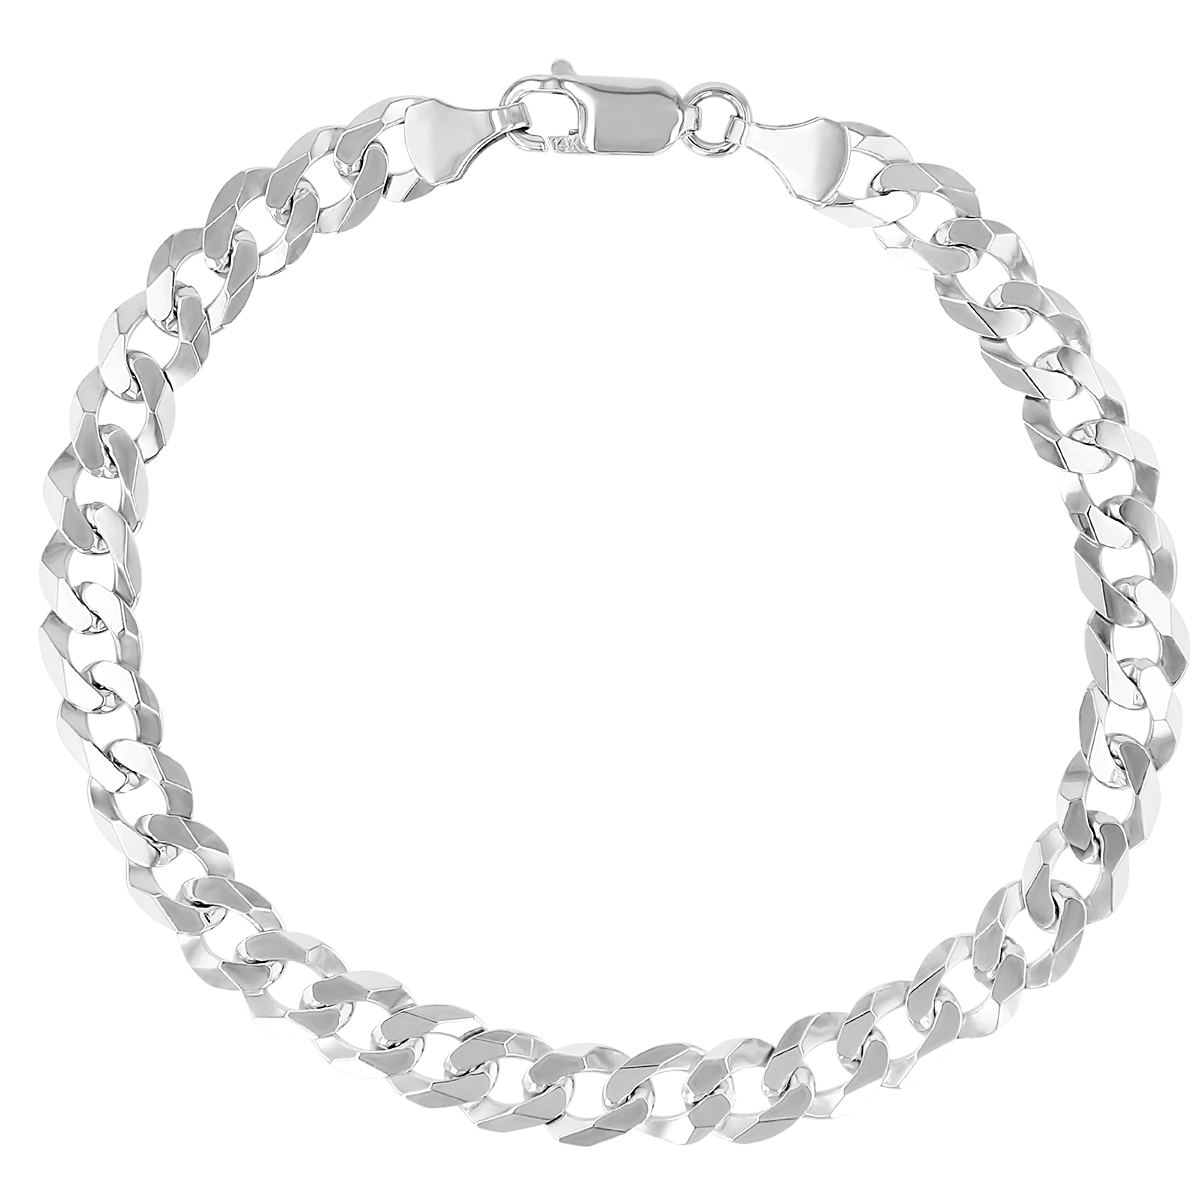 White Gold Curb Link Men's Bracelet, 8.5